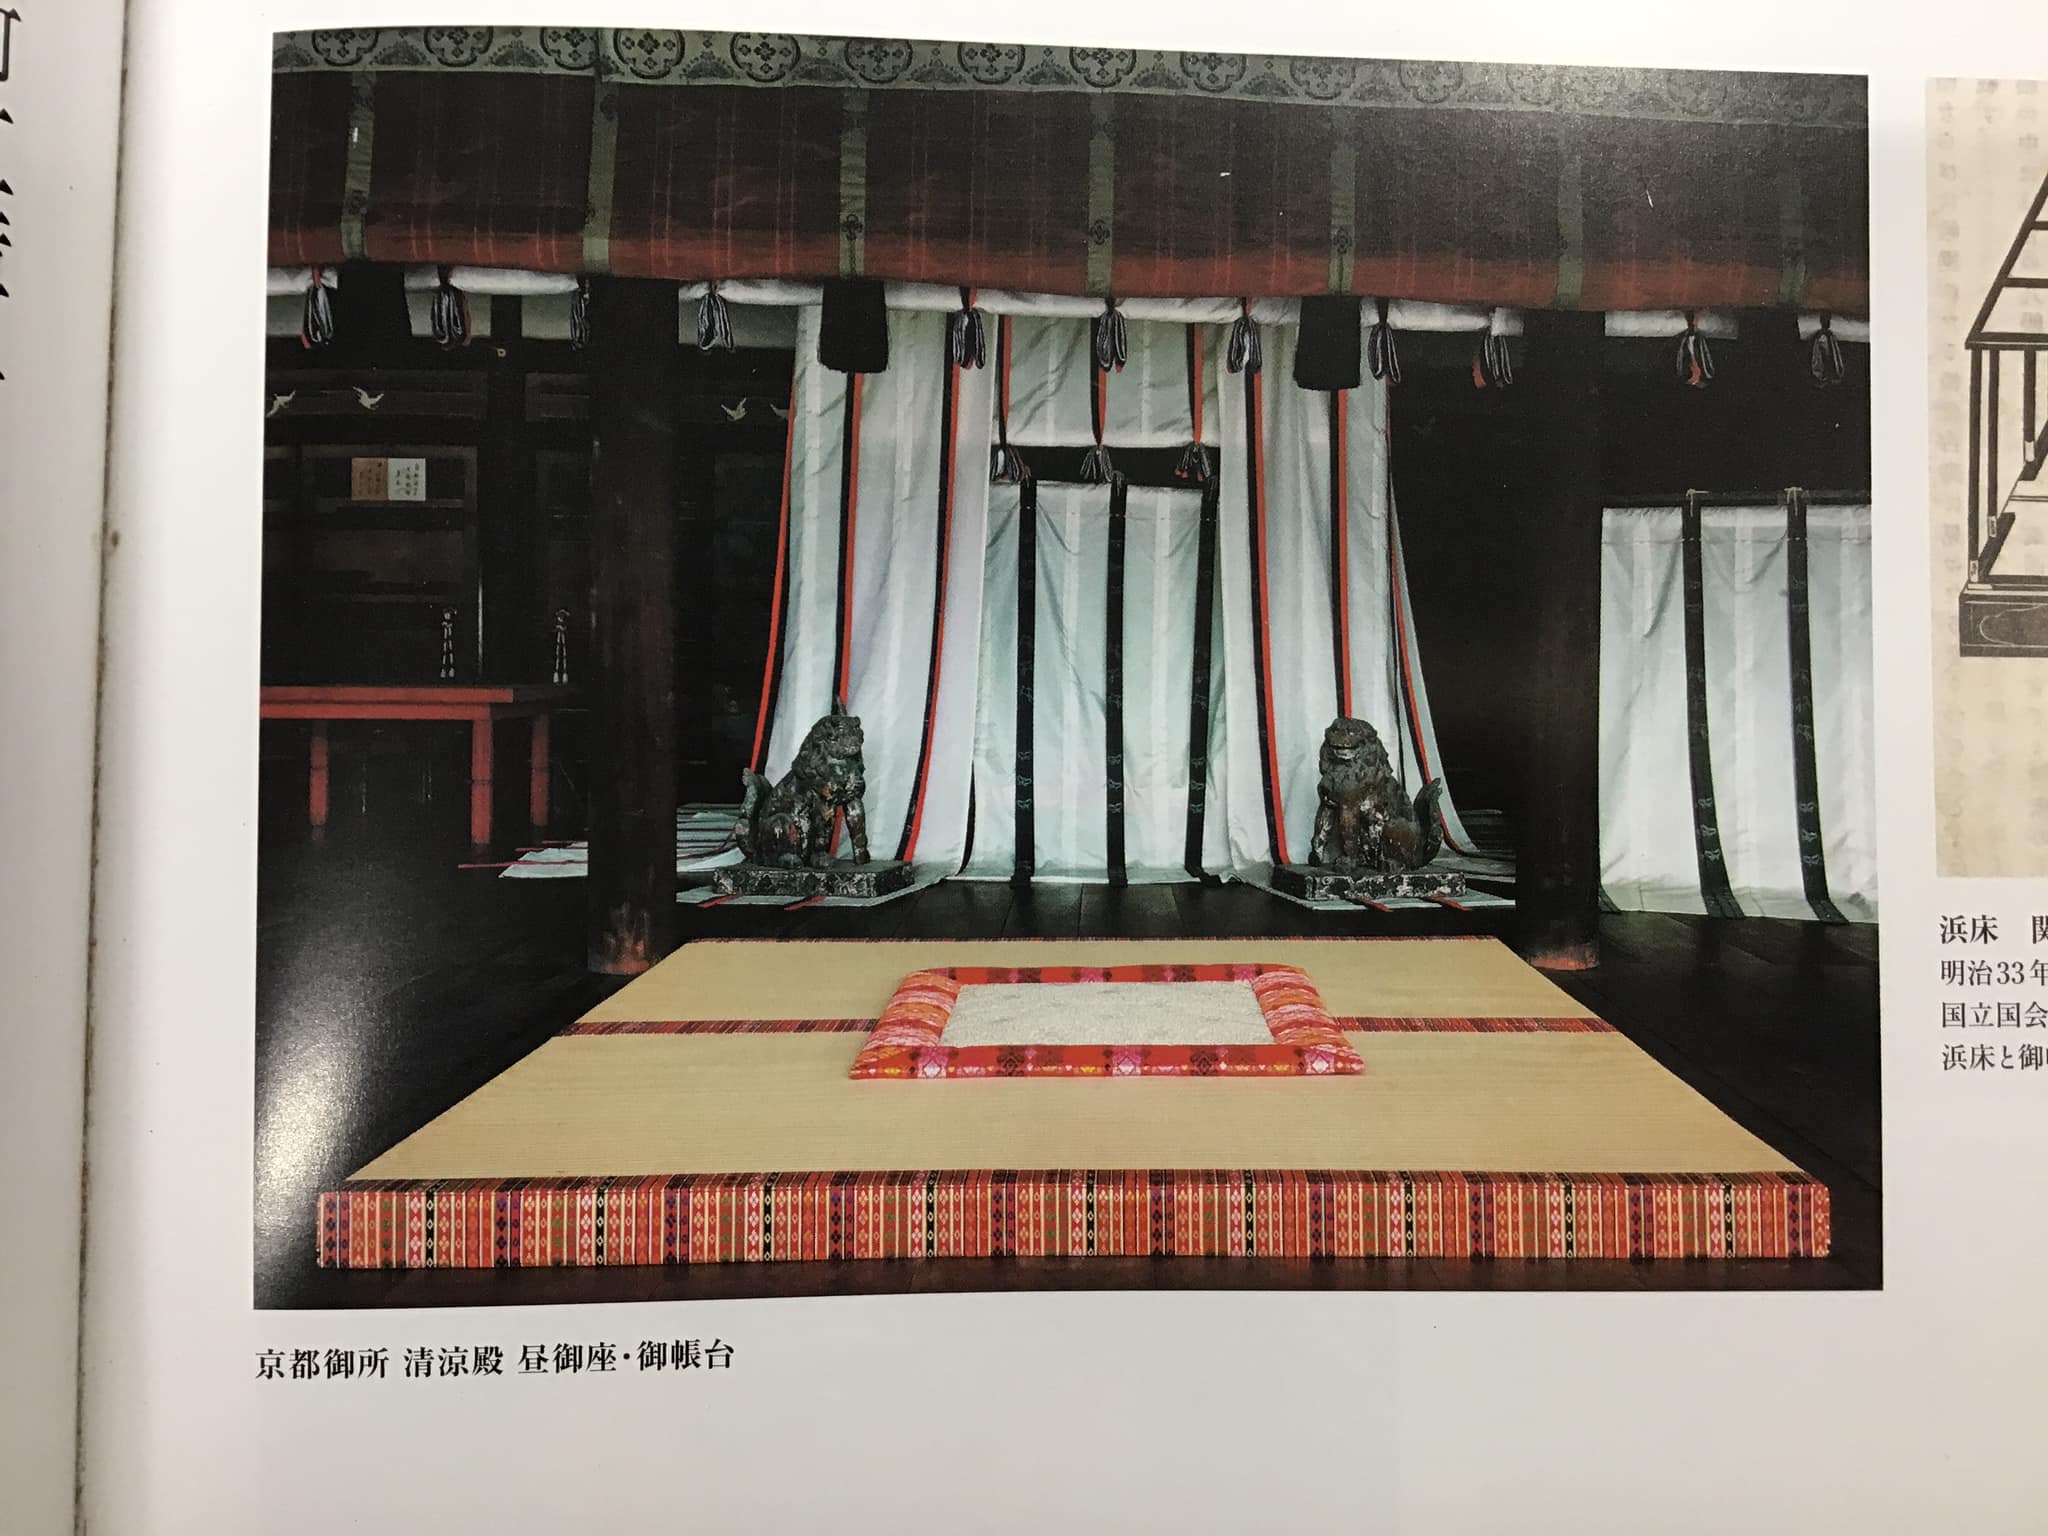 魂込めた繧繝二方縁二畳台の納品 | 乗本畳店 | 愛知県豊川市の畳屋